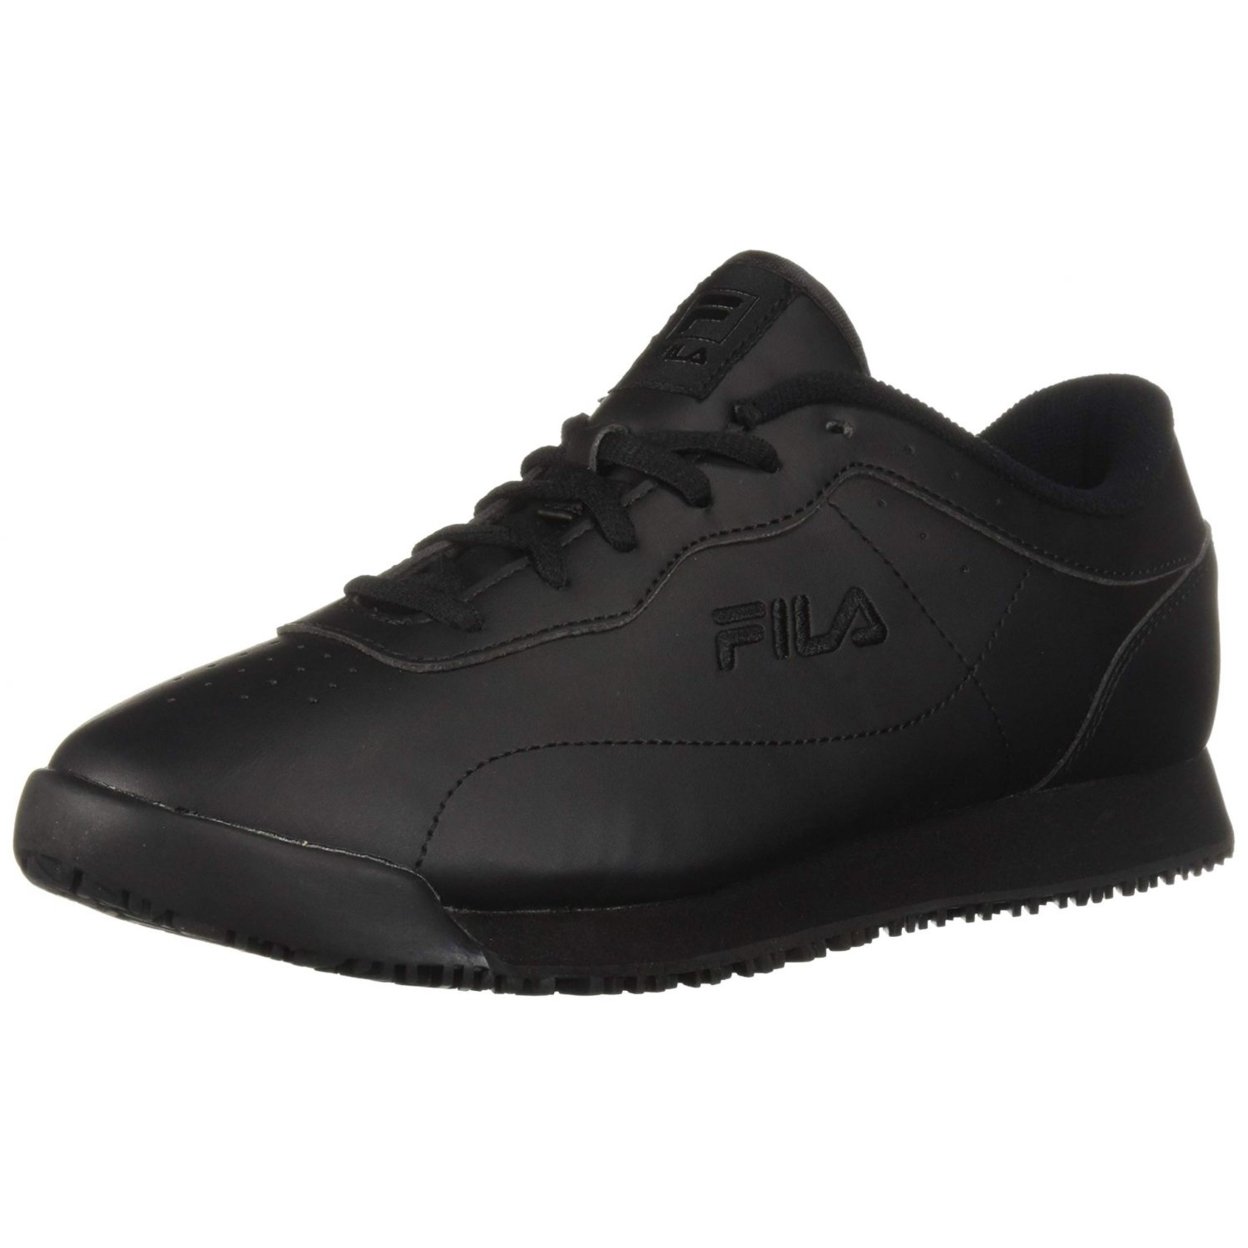 Fila Memory Viable Sr Wide Womens Shoes Size 10, Color: Black 0 BLK/BLK/BLK - Black, 11.5